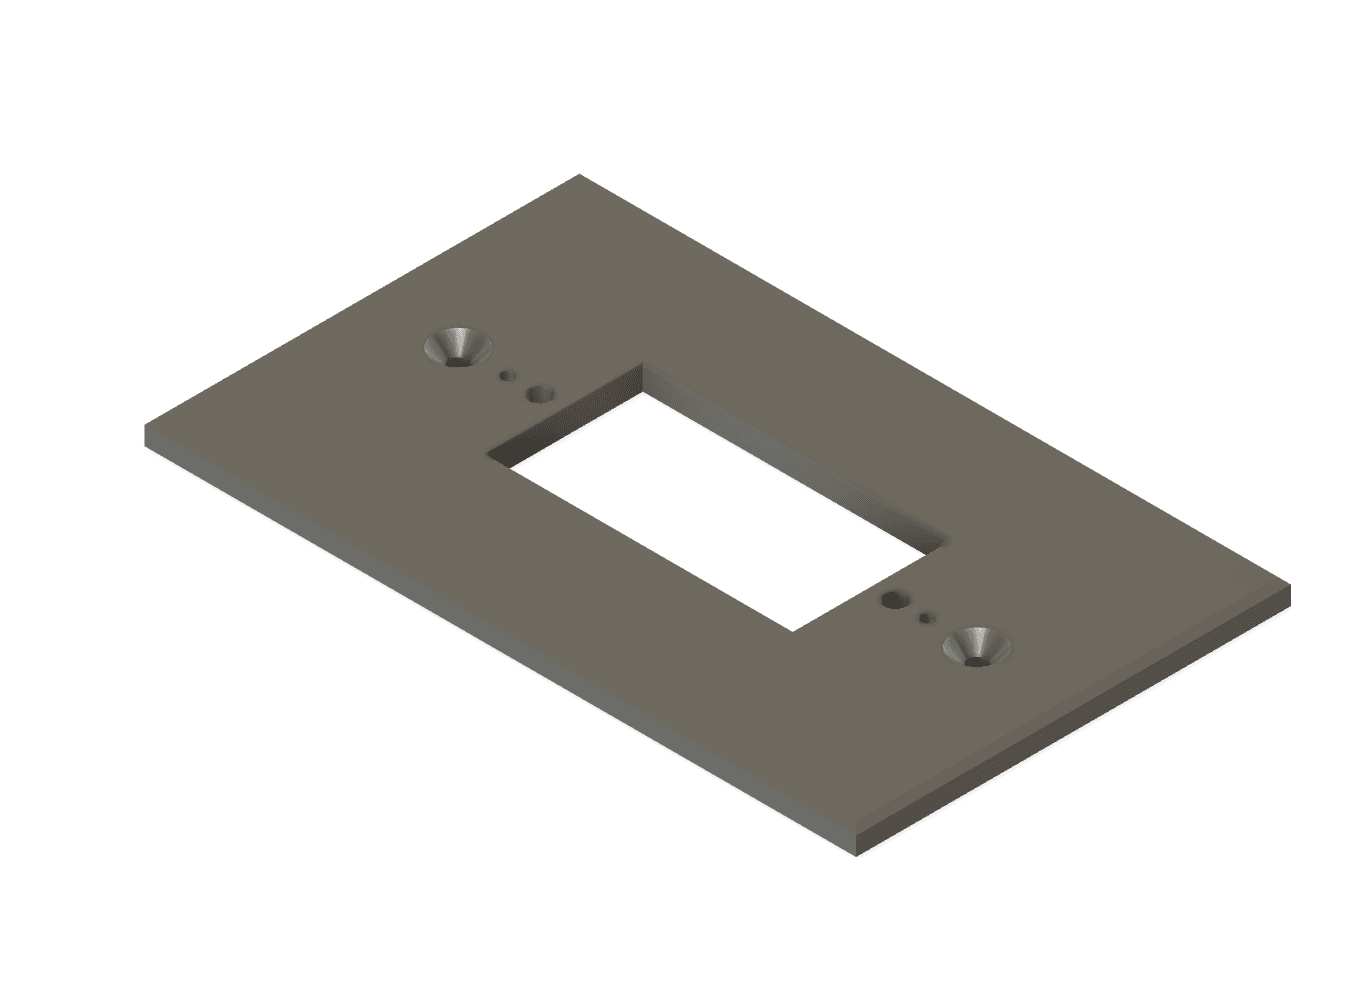 Custom Backplate for Blink Doorbell 4.5 x 2-1/2” wide with 4in Hole Spacing - DoorbellMount.Com